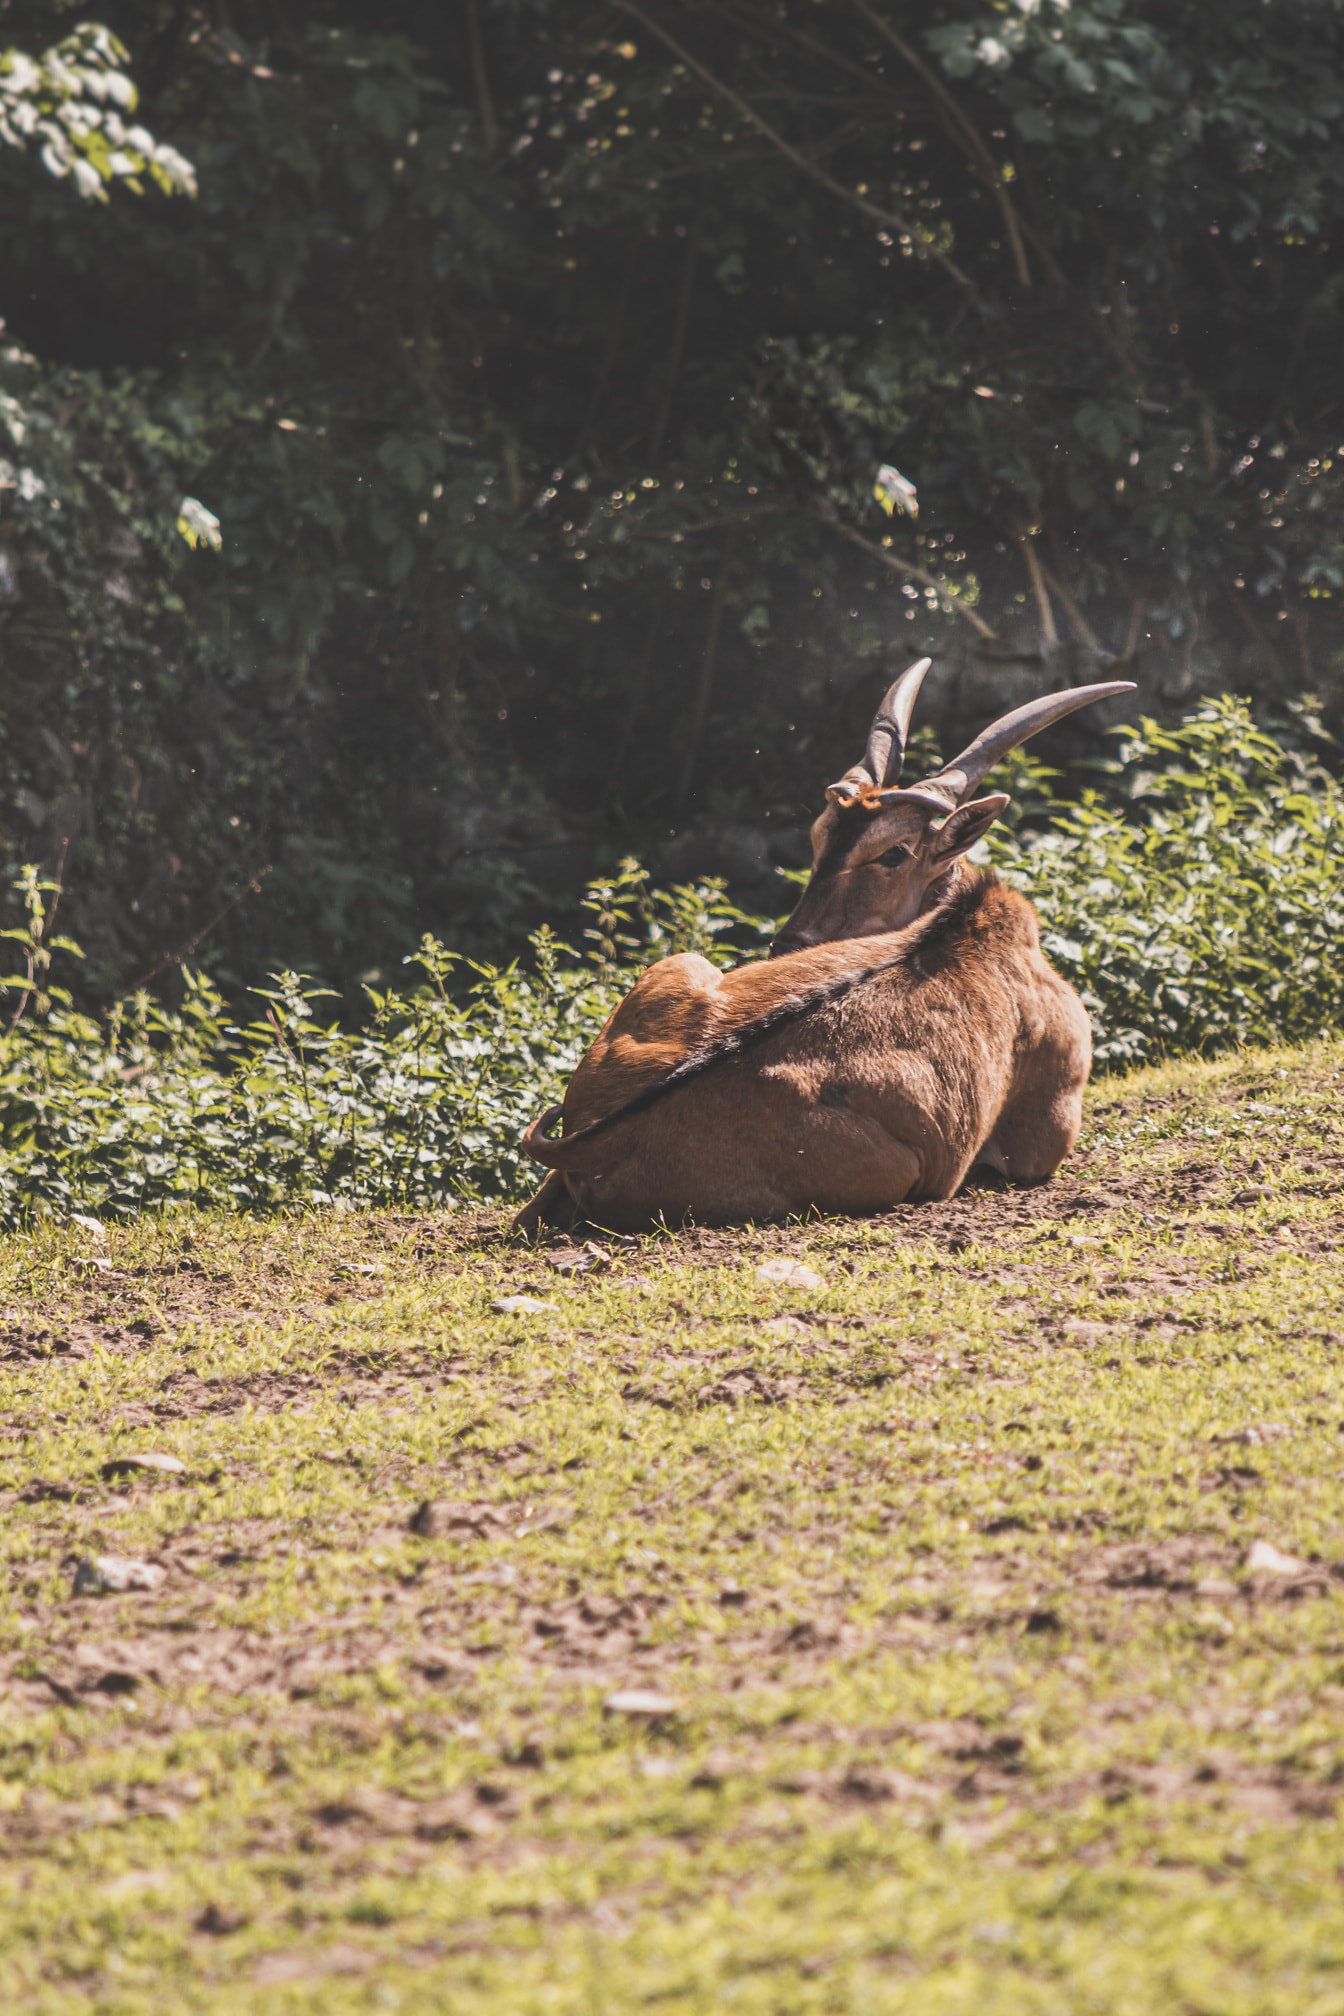 ละมั่งอีแลนด์ (Taurotragus oryx) นอนบนพื้นหญ้าในถิ่นทุรกันดาร